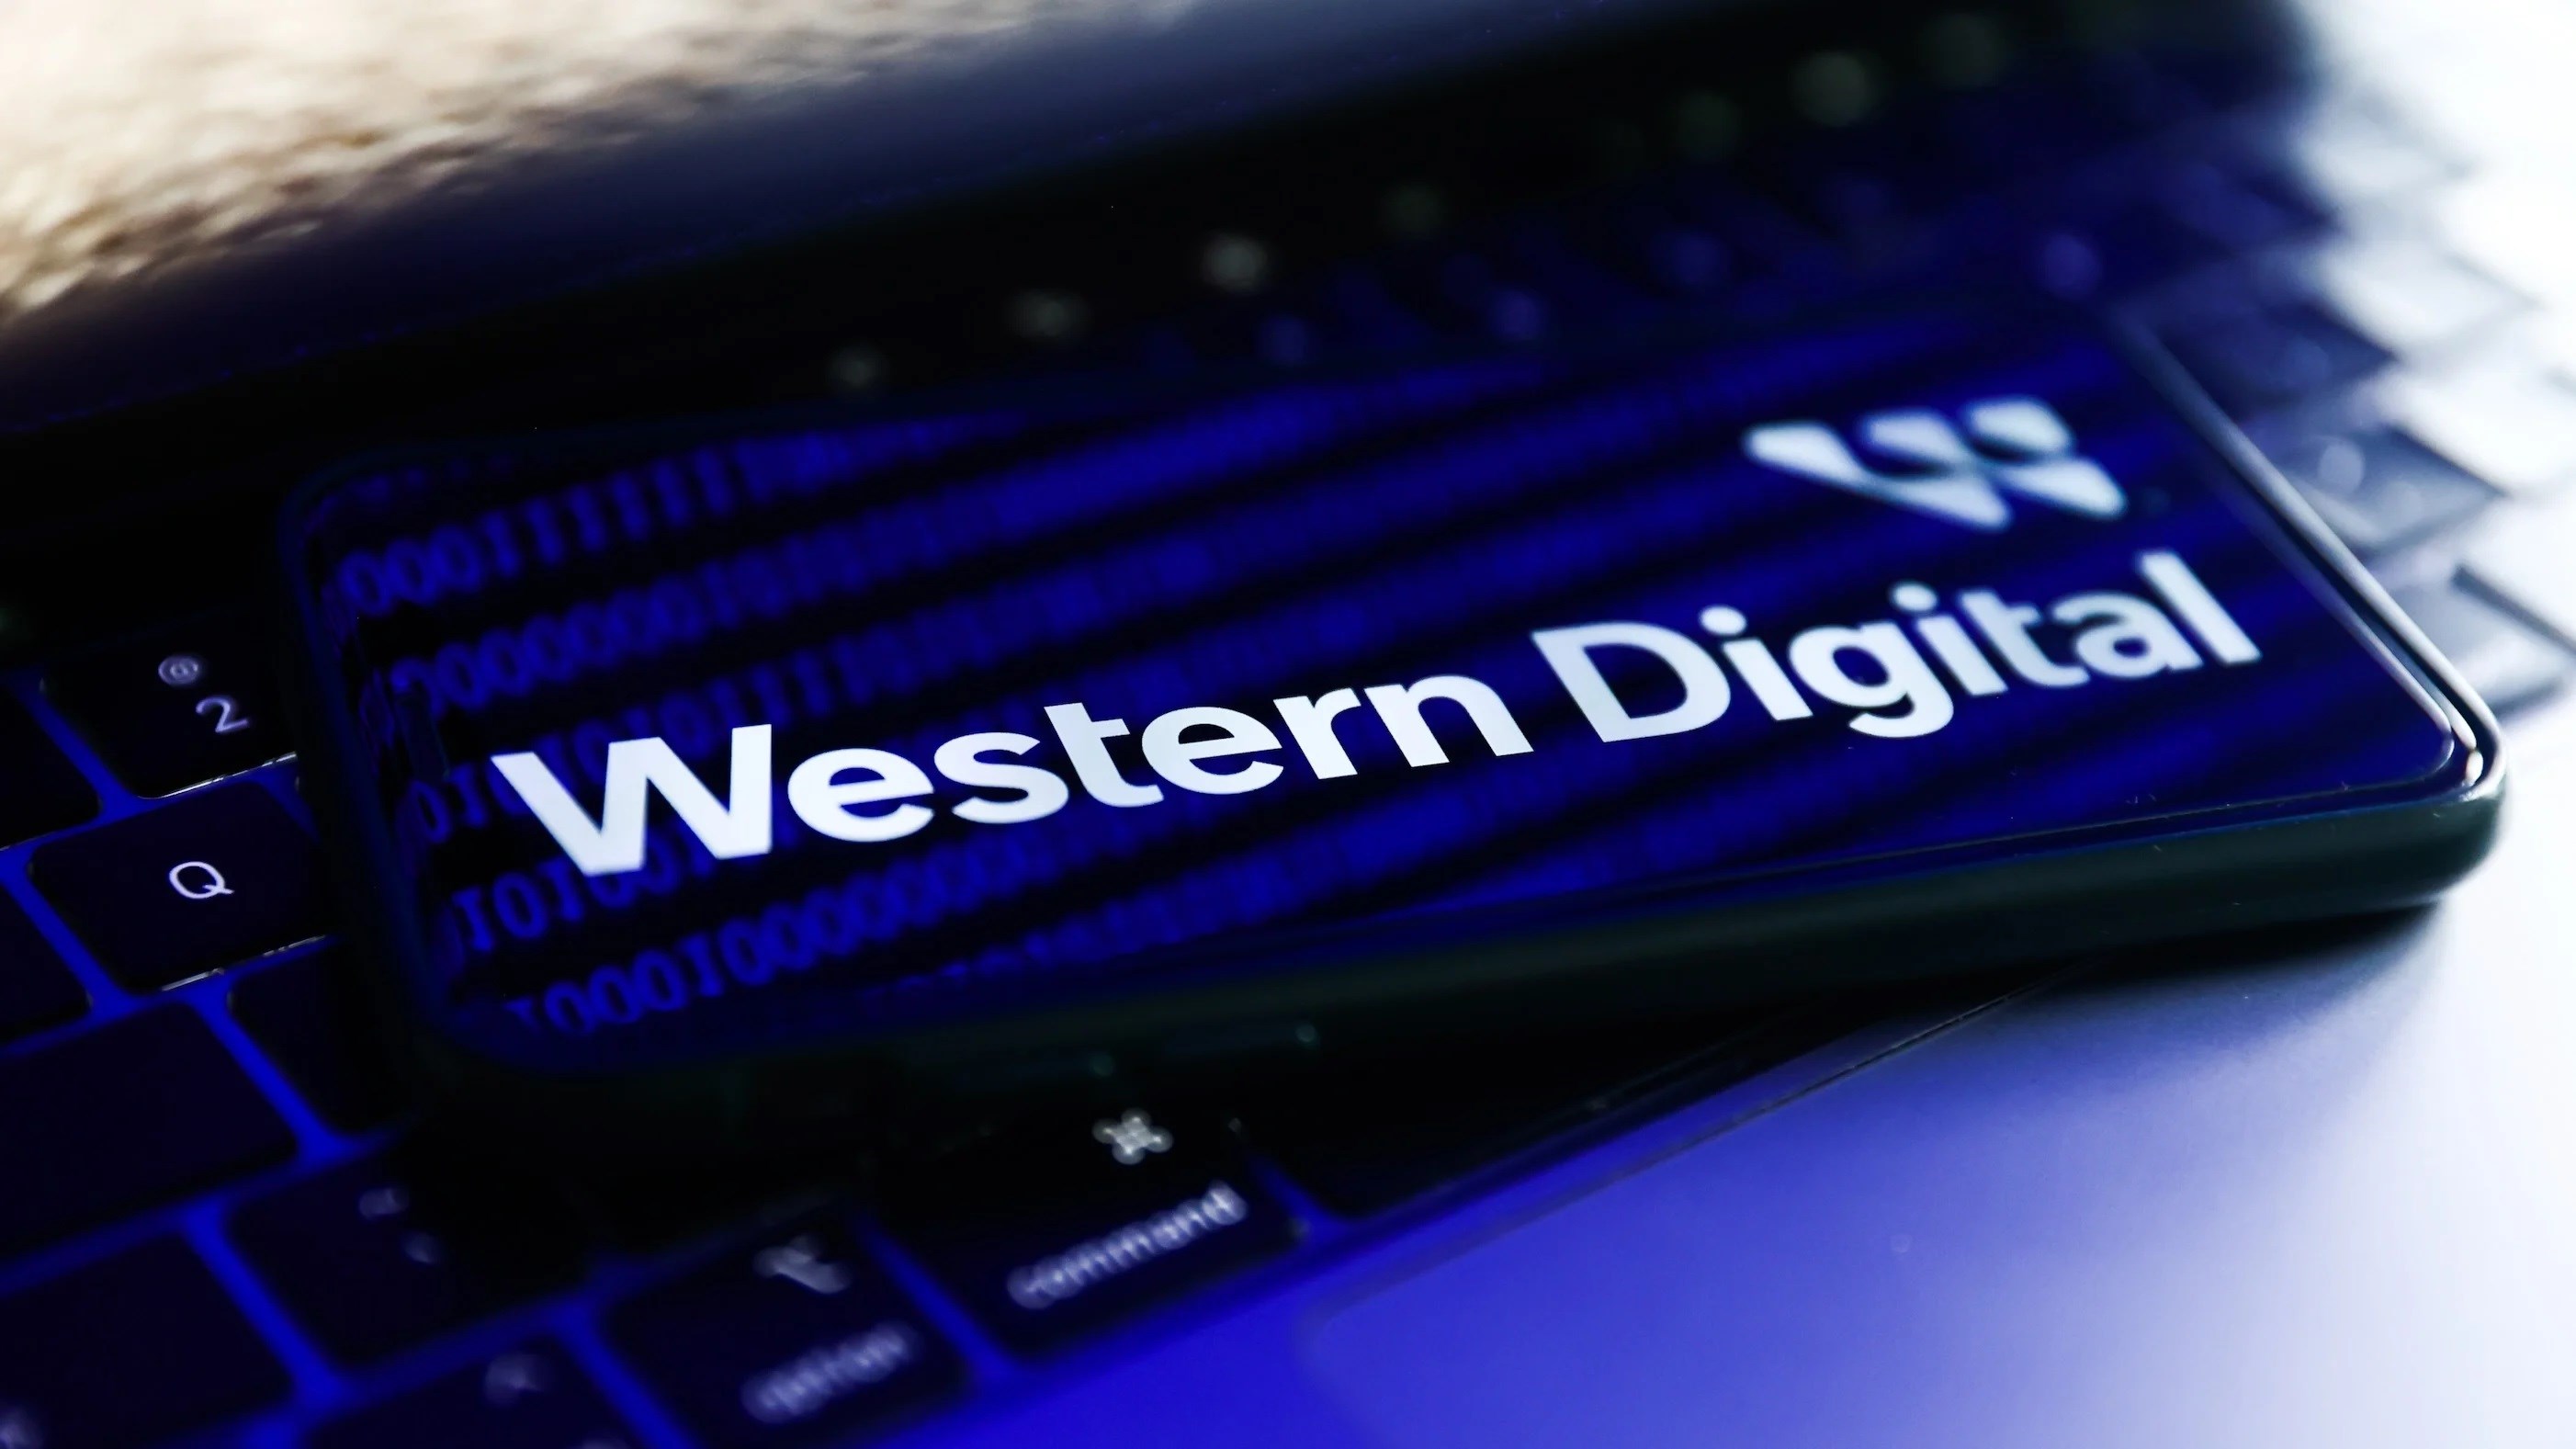 Western Digital siber saldırıya uğradı: Kullanıcıları uyarıyor